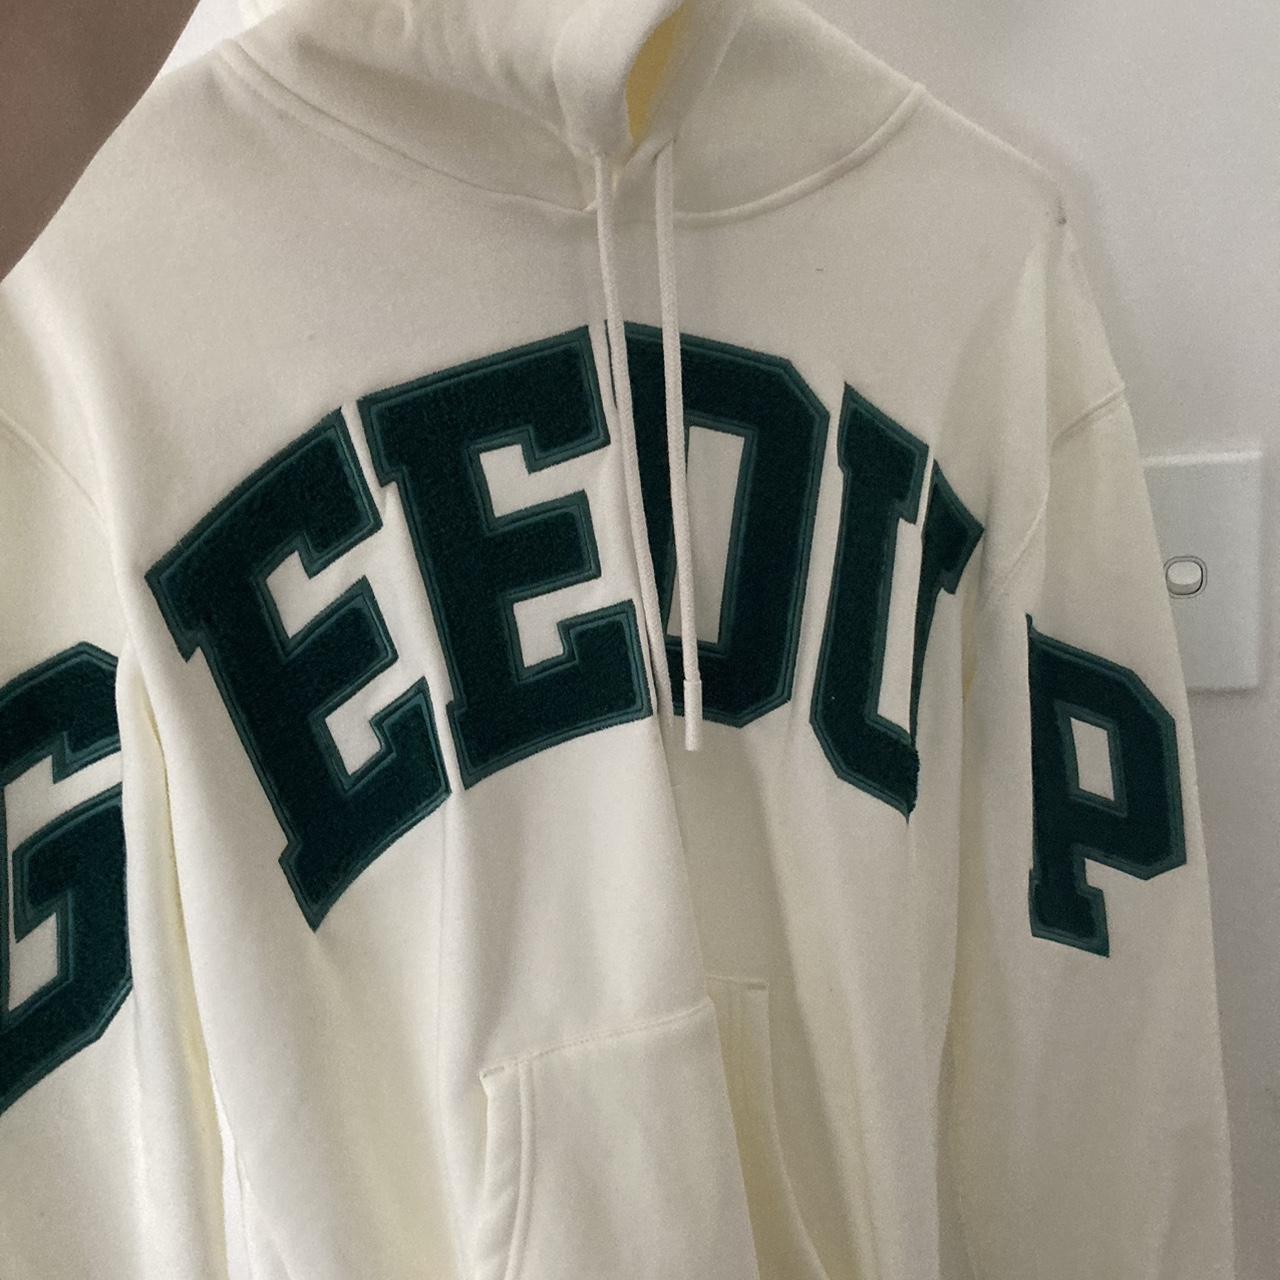 💚🤍 Green and white geedup hoodie Worn once, flaws... - Depop